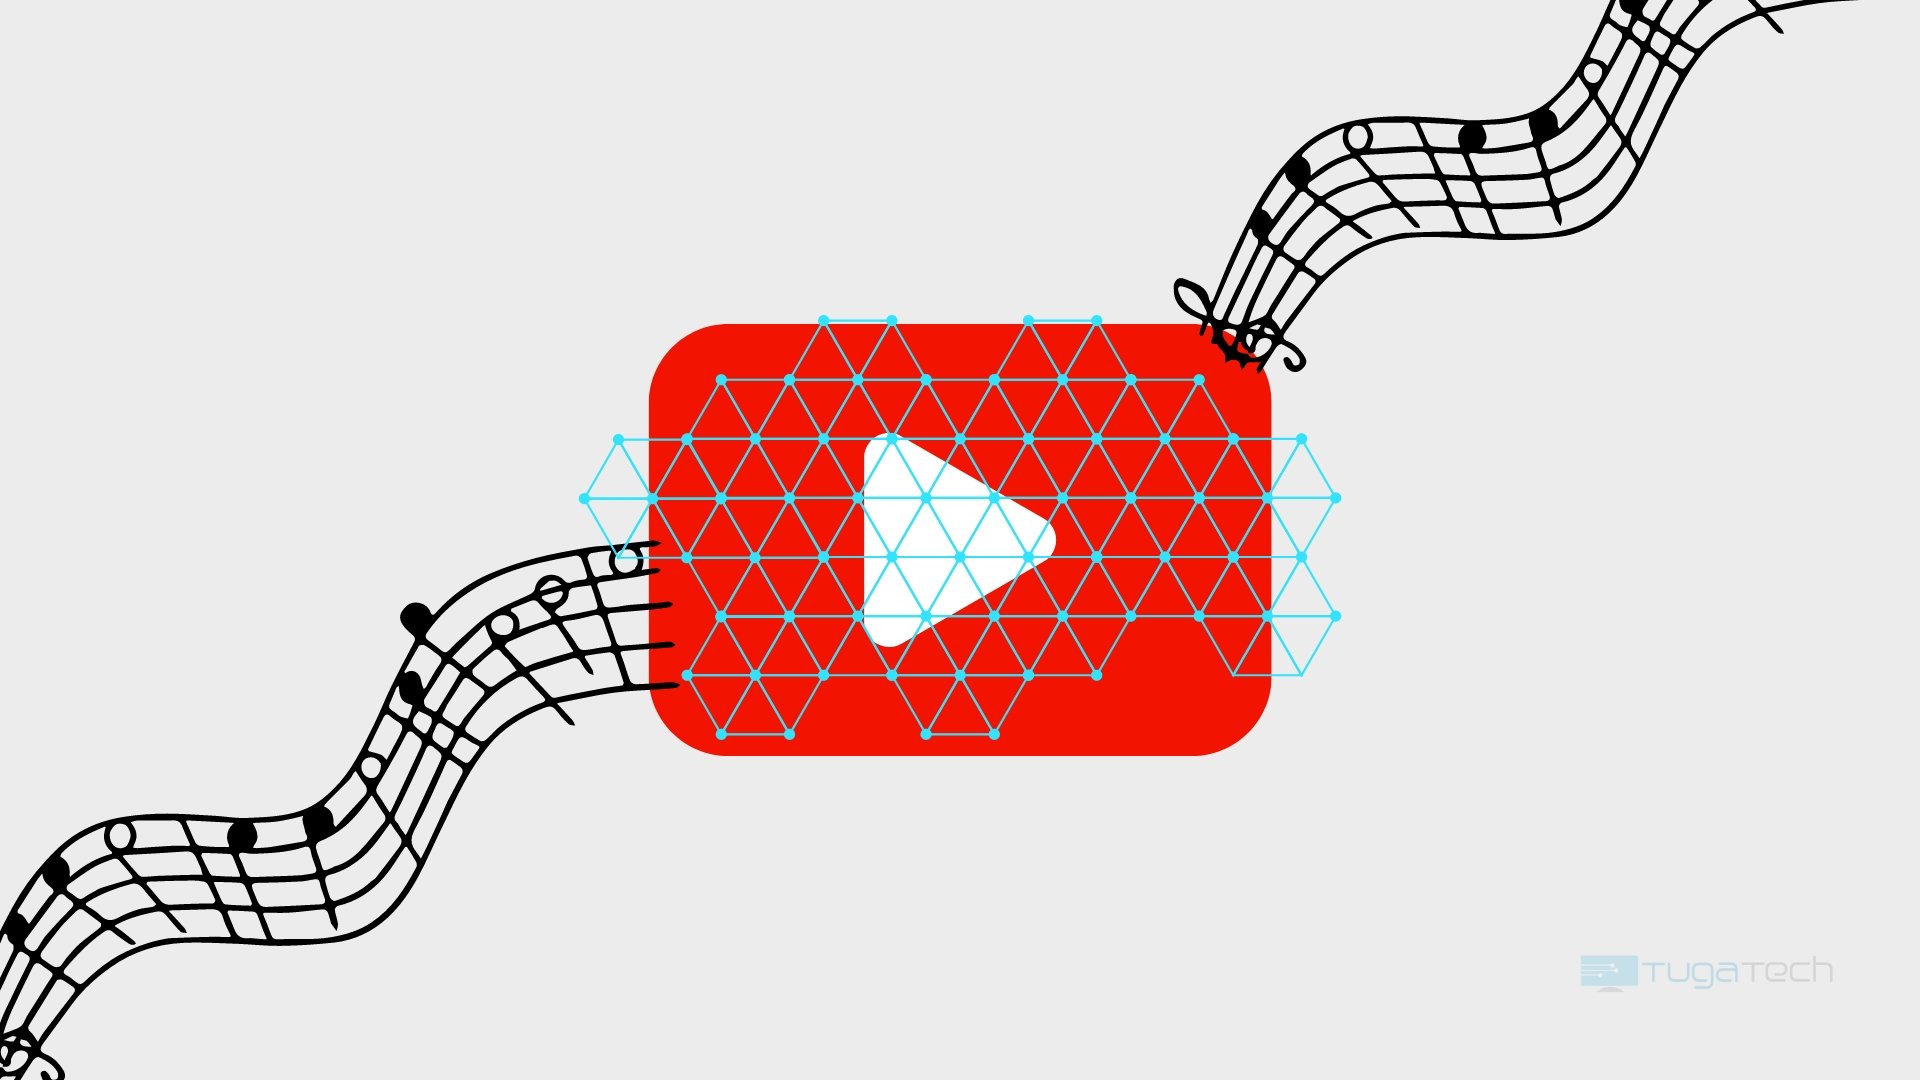 Logo do Youtube com rede de linhas e pautas musicais